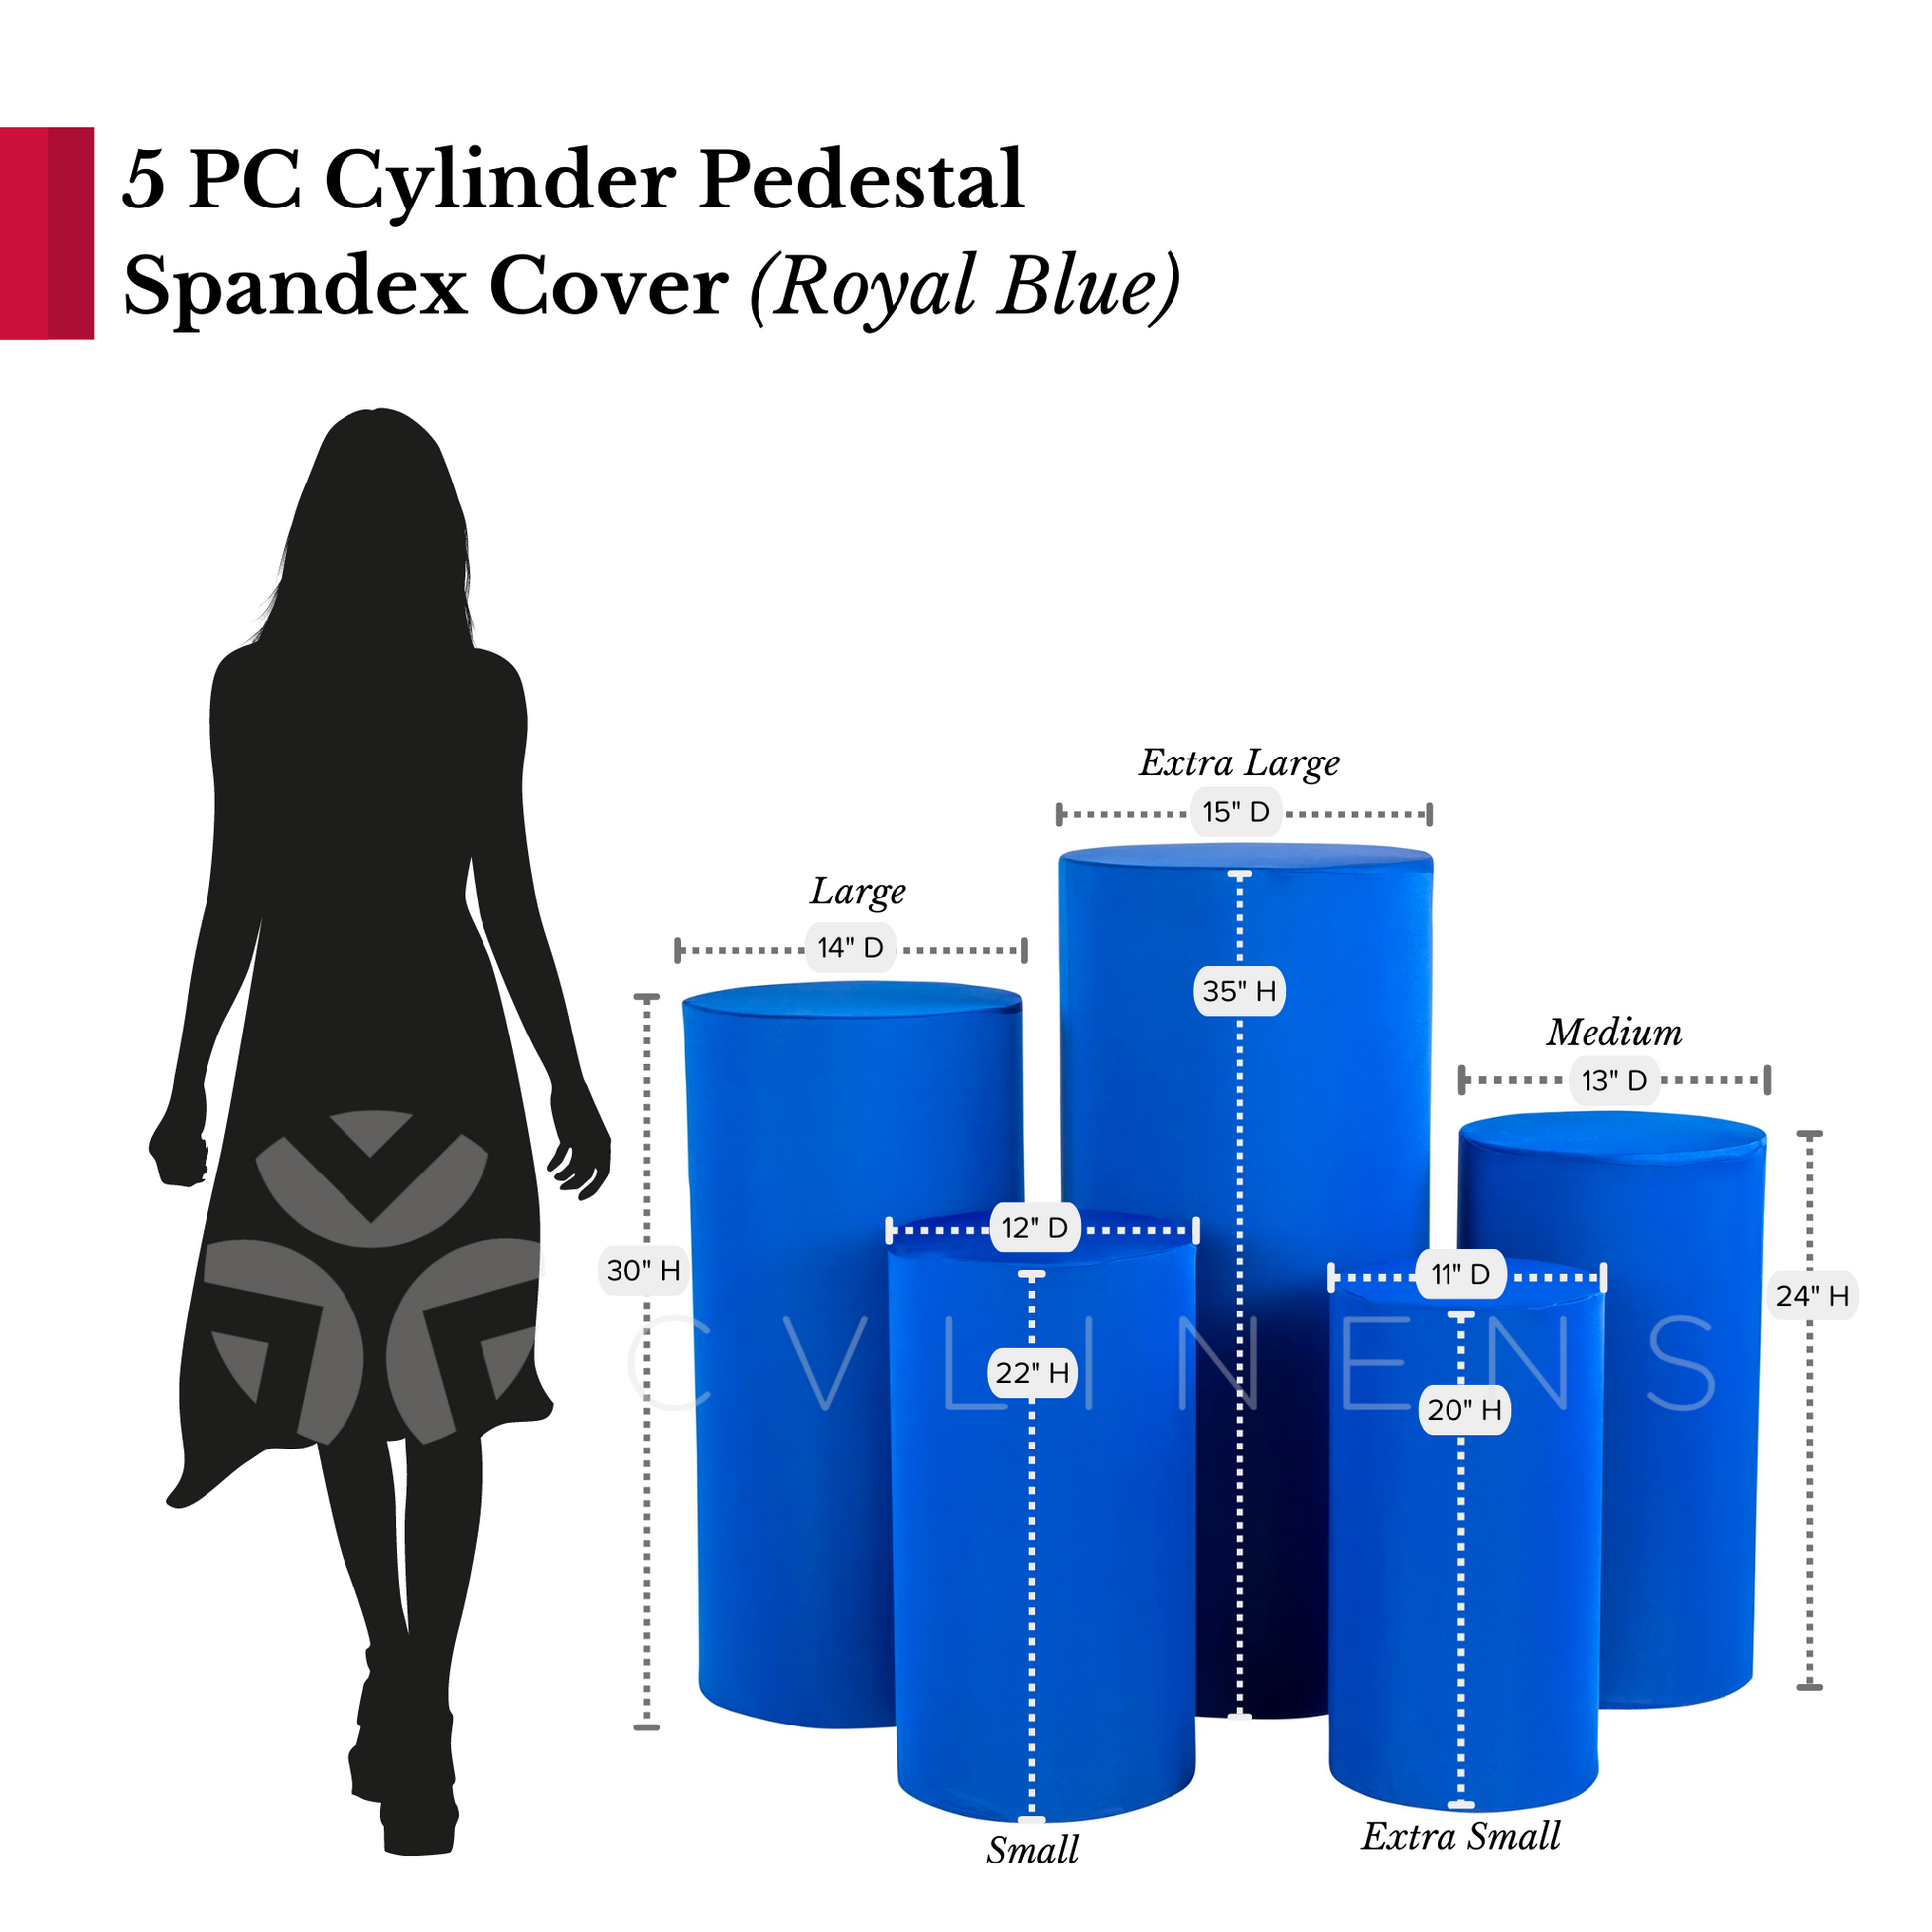 Spandex Pillar Covers for Metal Cylinder Pedestal Stands 5 pcs/set - Royal Blue